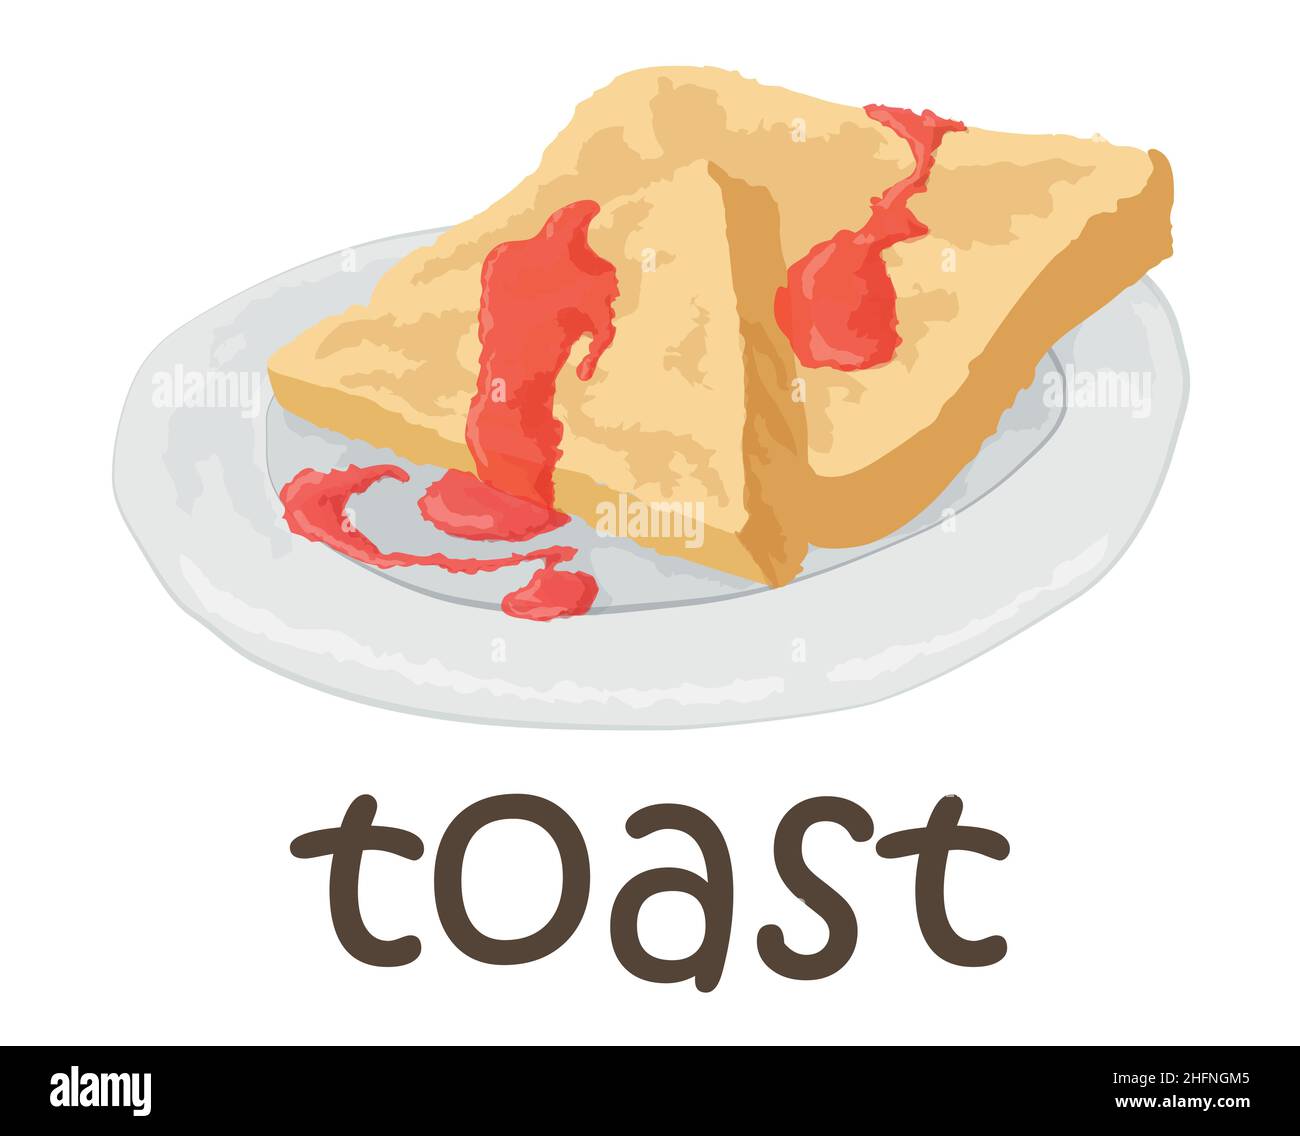 Adesivo toast. Illustrazione vettoriale in stile acquerello, per grafica e web design Illustrazione Vettoriale